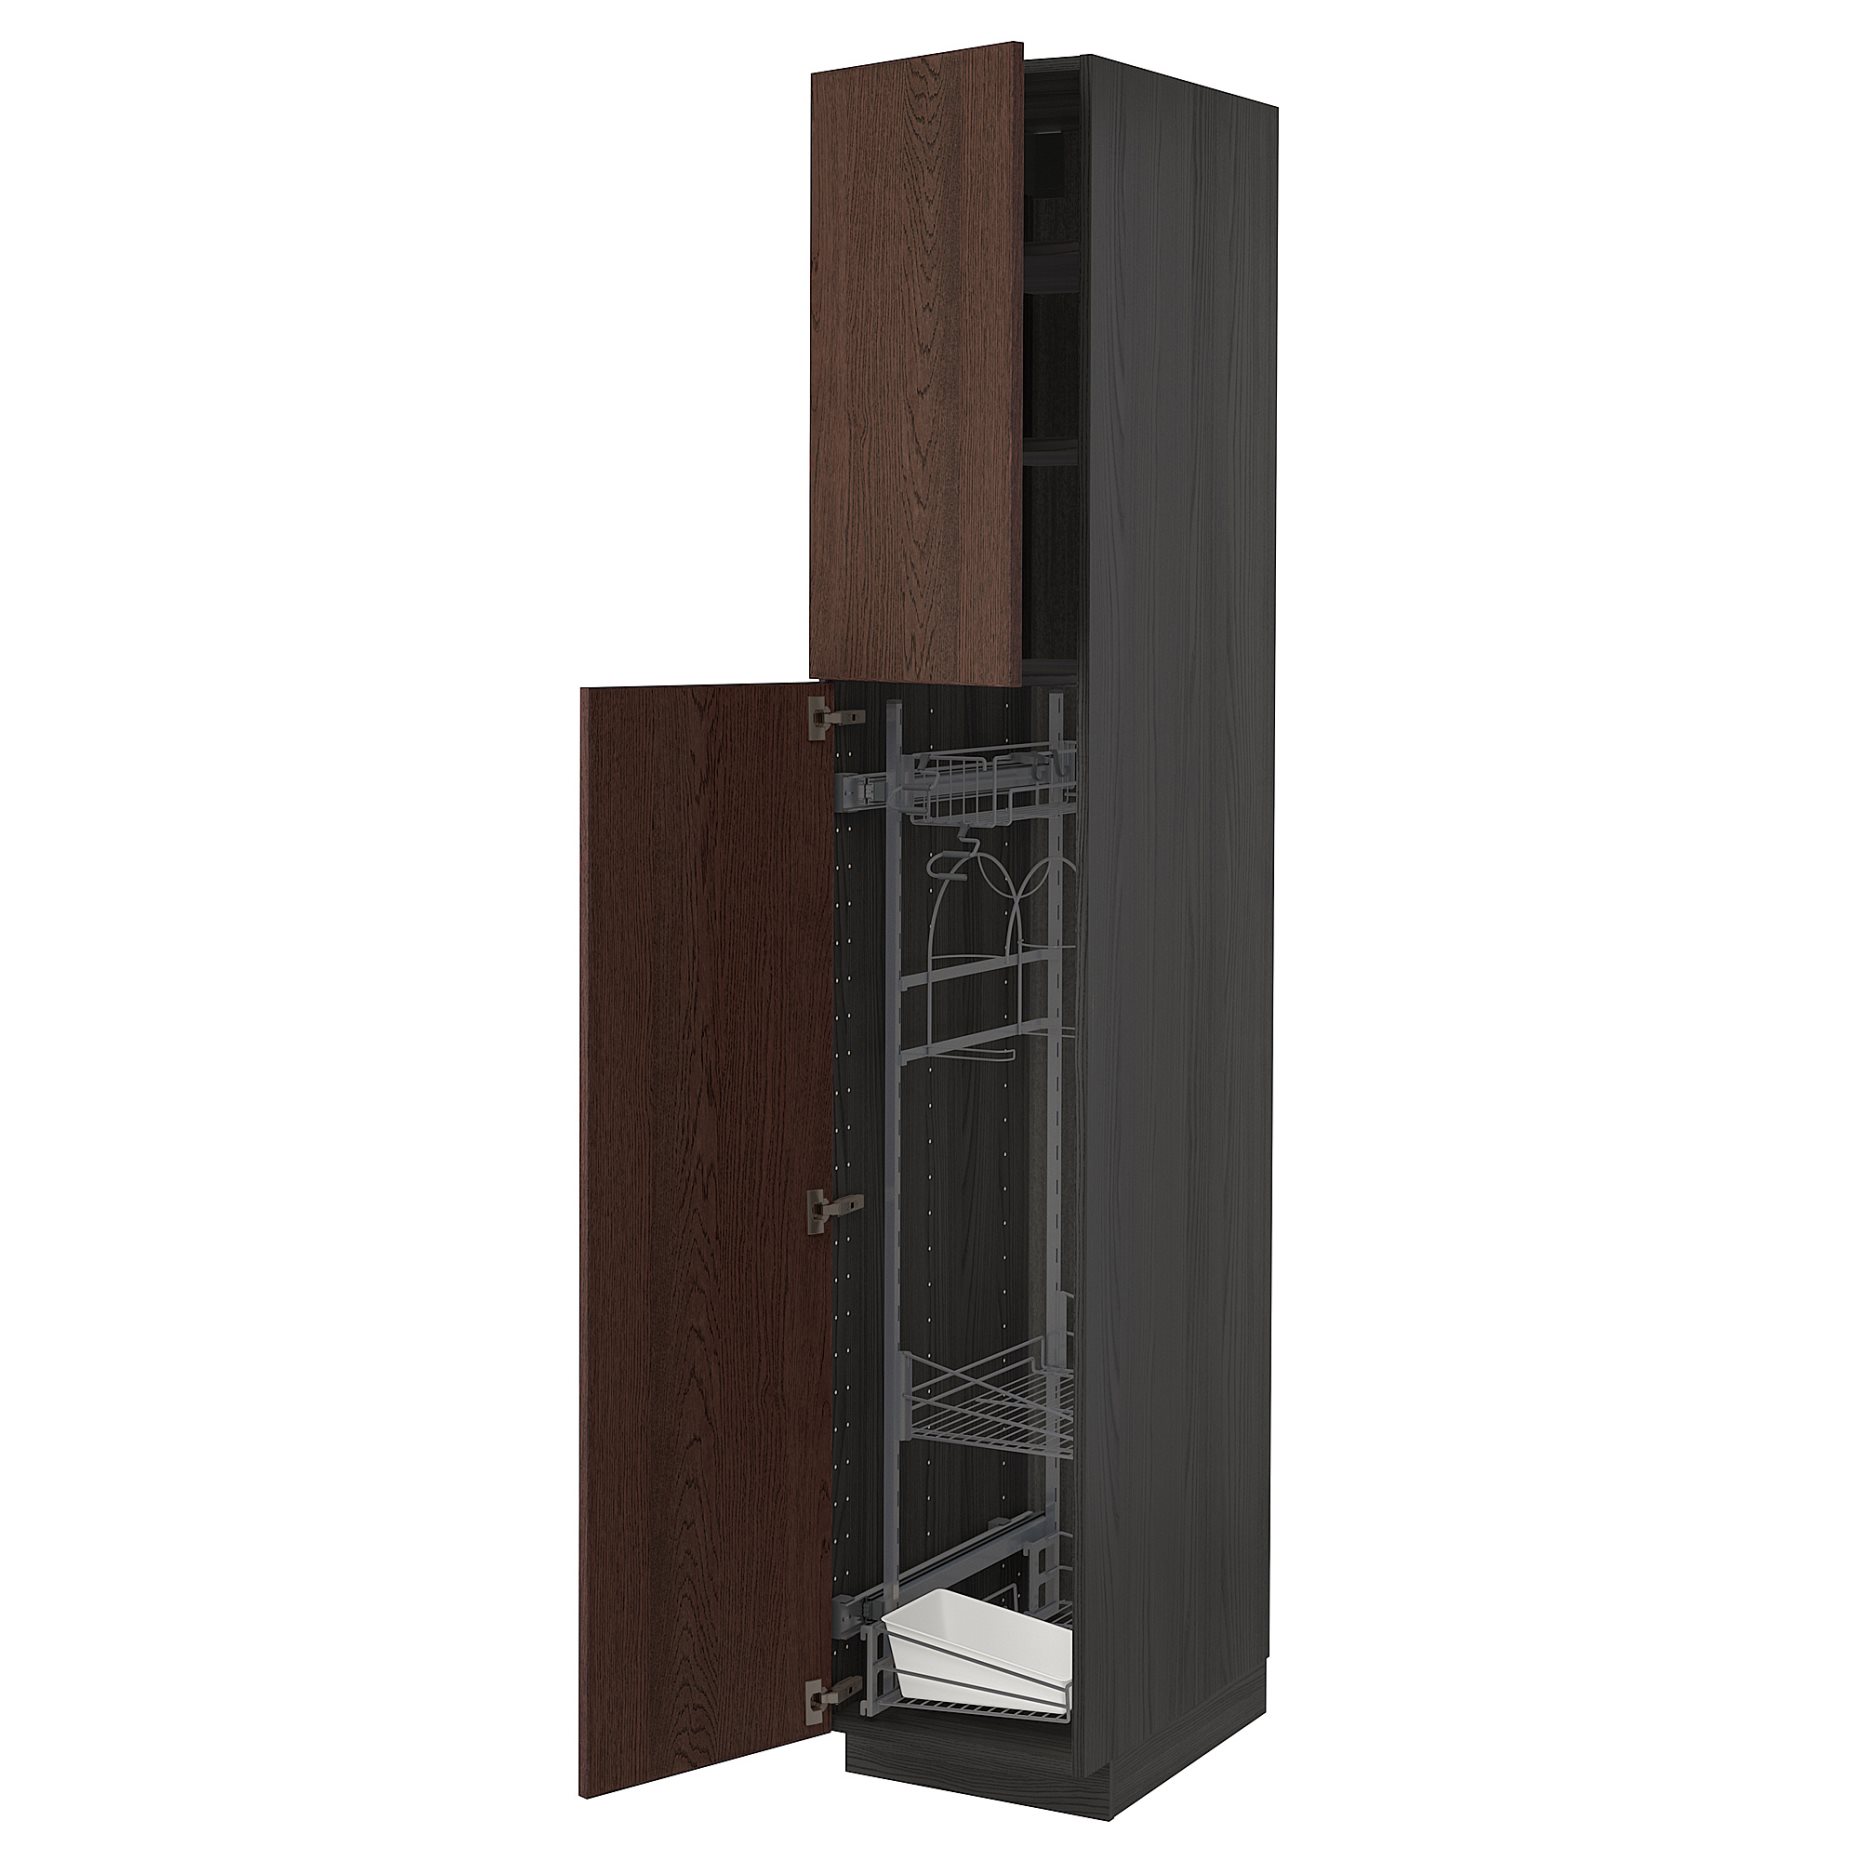 METOD, ψηλό ντουλάπι με εσωτερικά εξάρτηματα για τα είδη καθαρισμού, 40x60x220 cm, 994.612.76